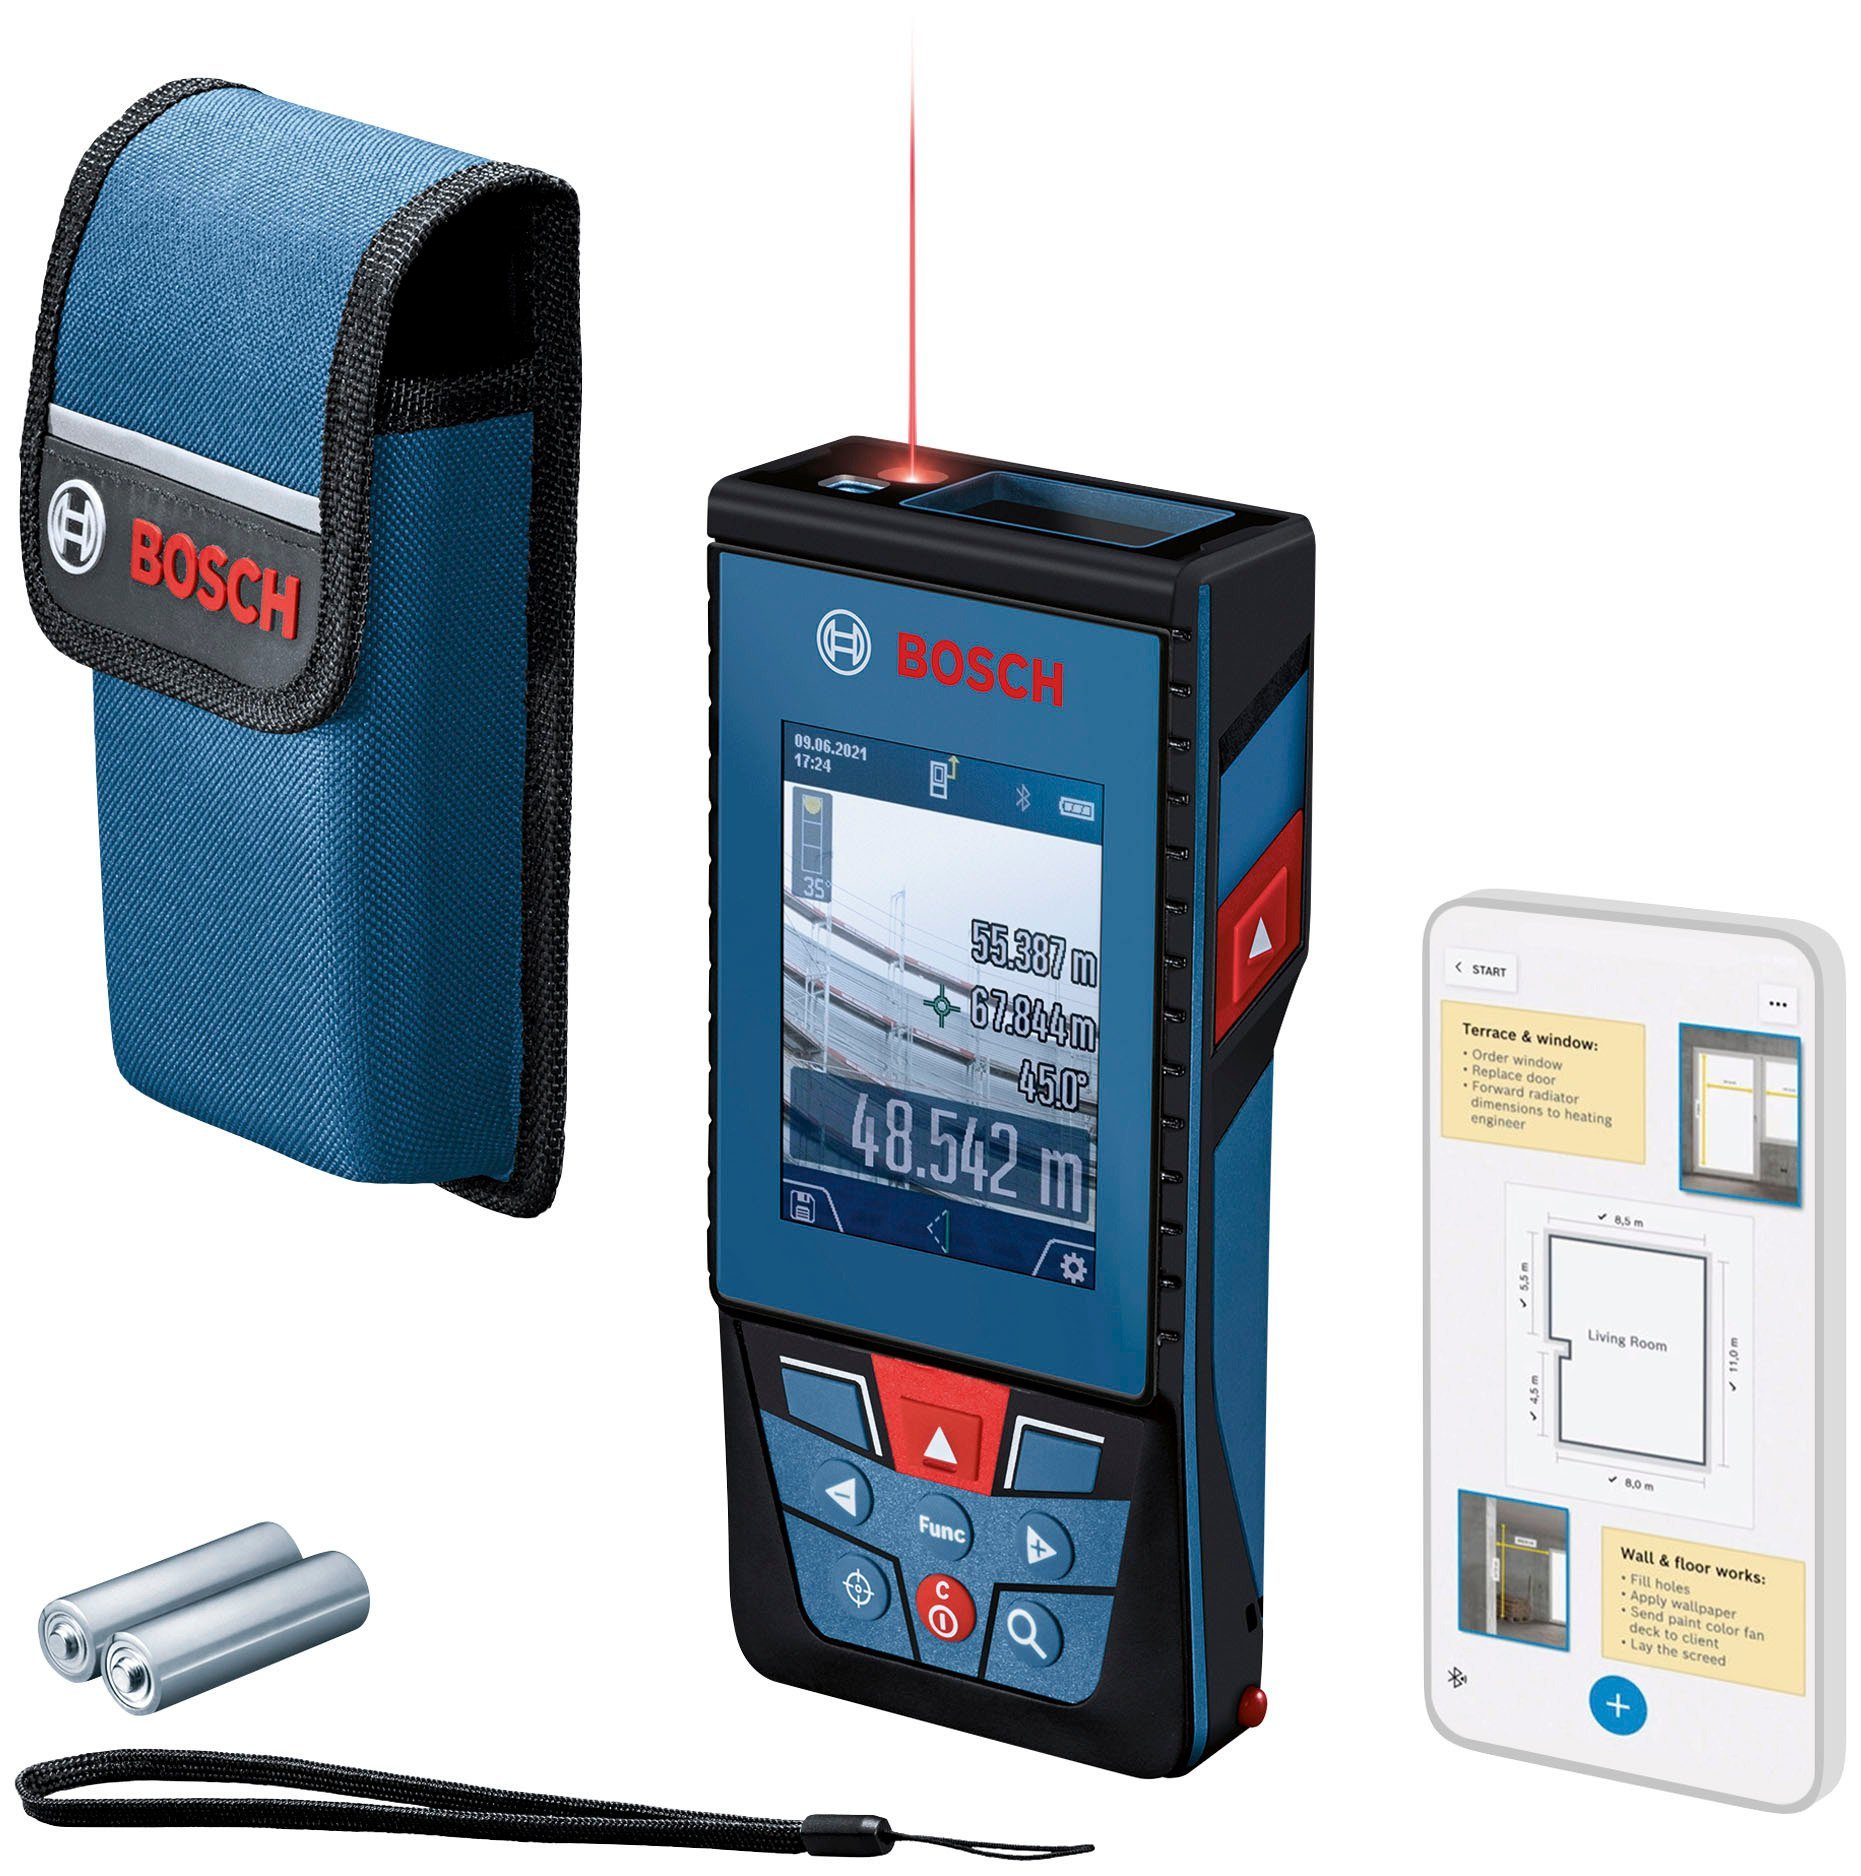 Bosch Professional Entfernungsmesser GLM 100-25 leicht anpassbar für Baustellenbedingungen, C, raue